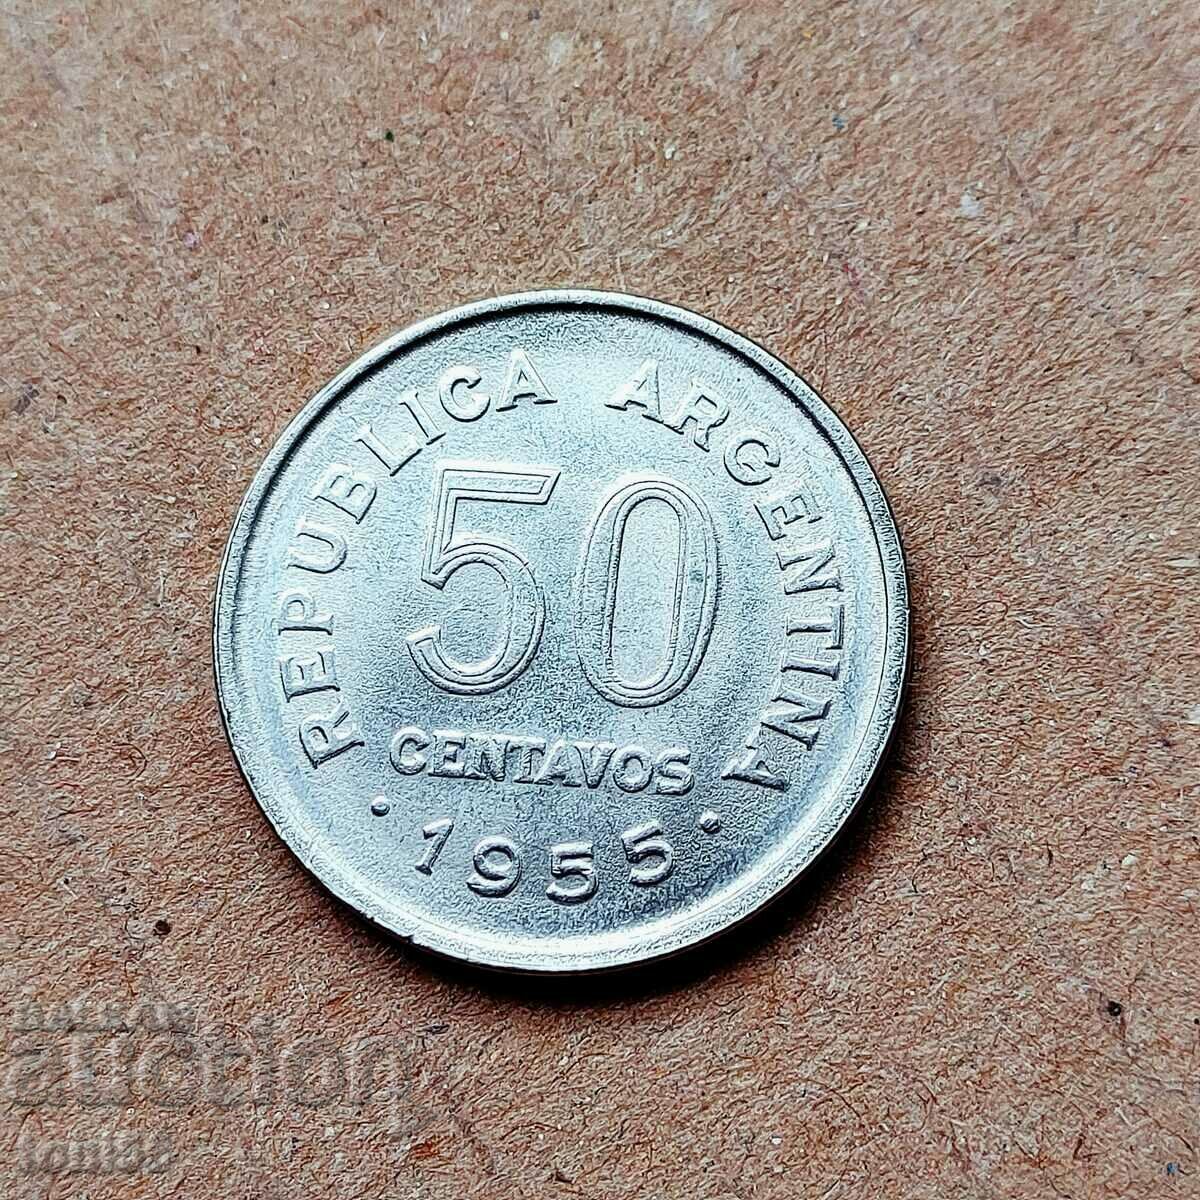 Αργεντινή 20 centavos 1959 aUNC